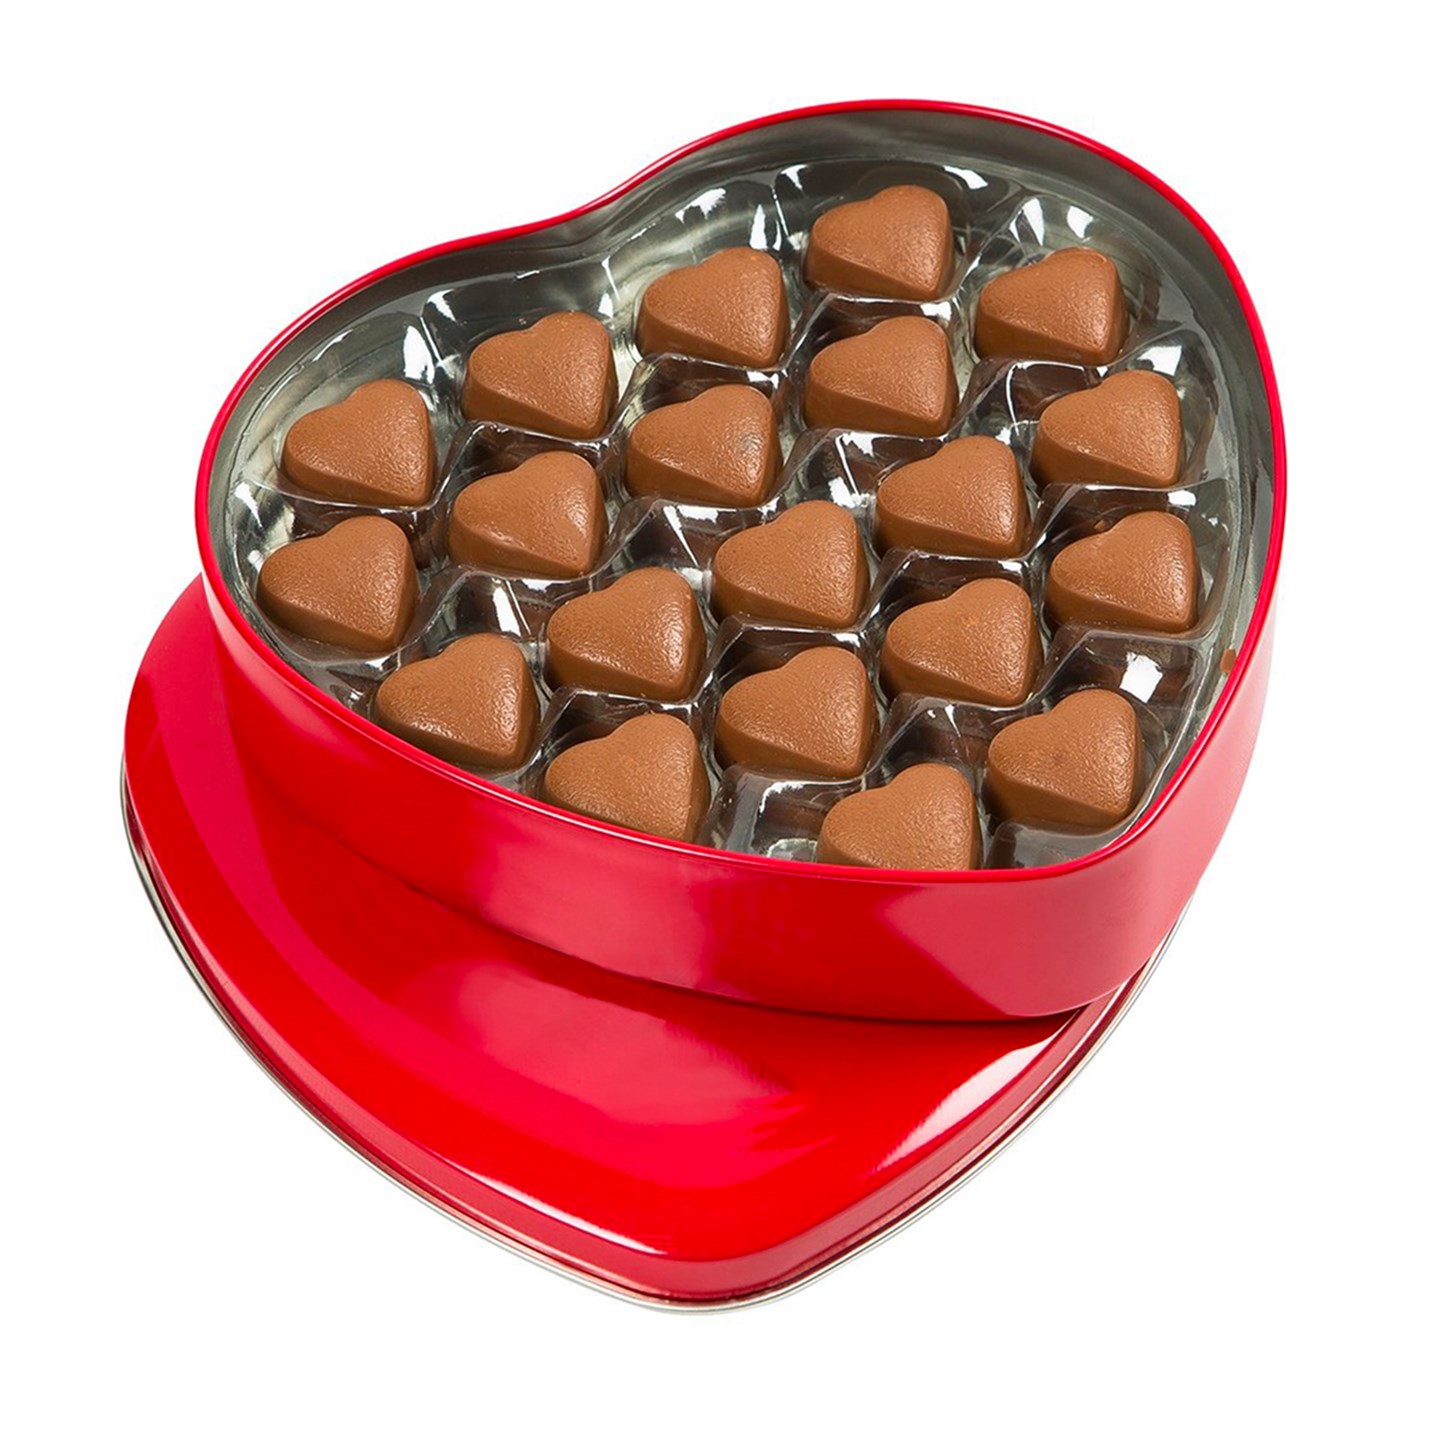 Kalp Çikolata Kırmızı Metal Kutu 400g - Melodi Çikolata